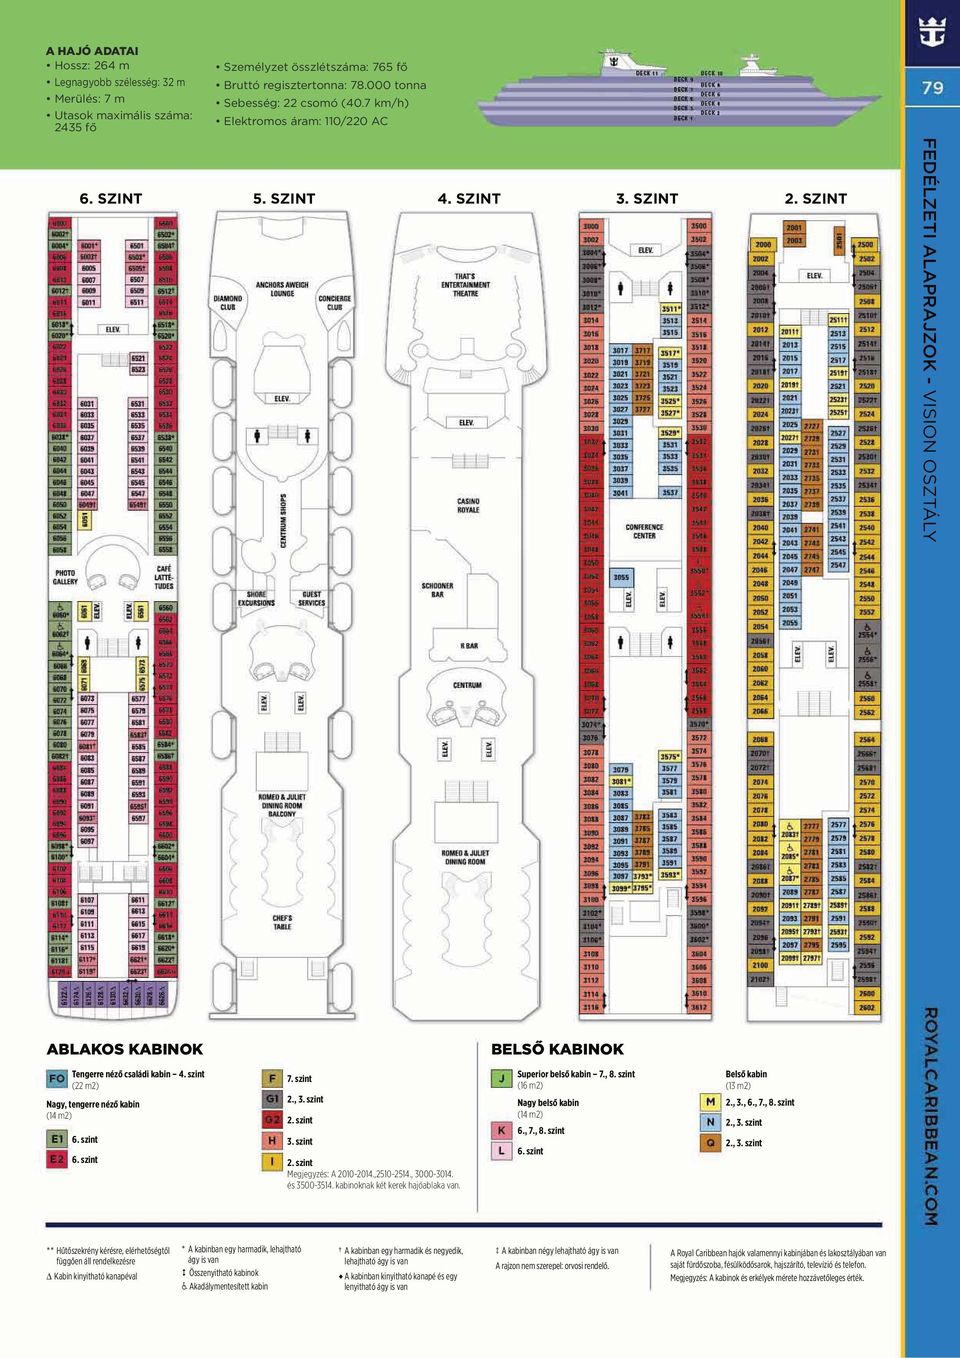 kabinoknak két kerek hajóablaka van. Superior belső kabin 7., 8. szint (16 m2) Nagy belső kabin (14 m2) 6., 7., 8. szint 6. szint Belső kabin (13 m2) 2., 3.